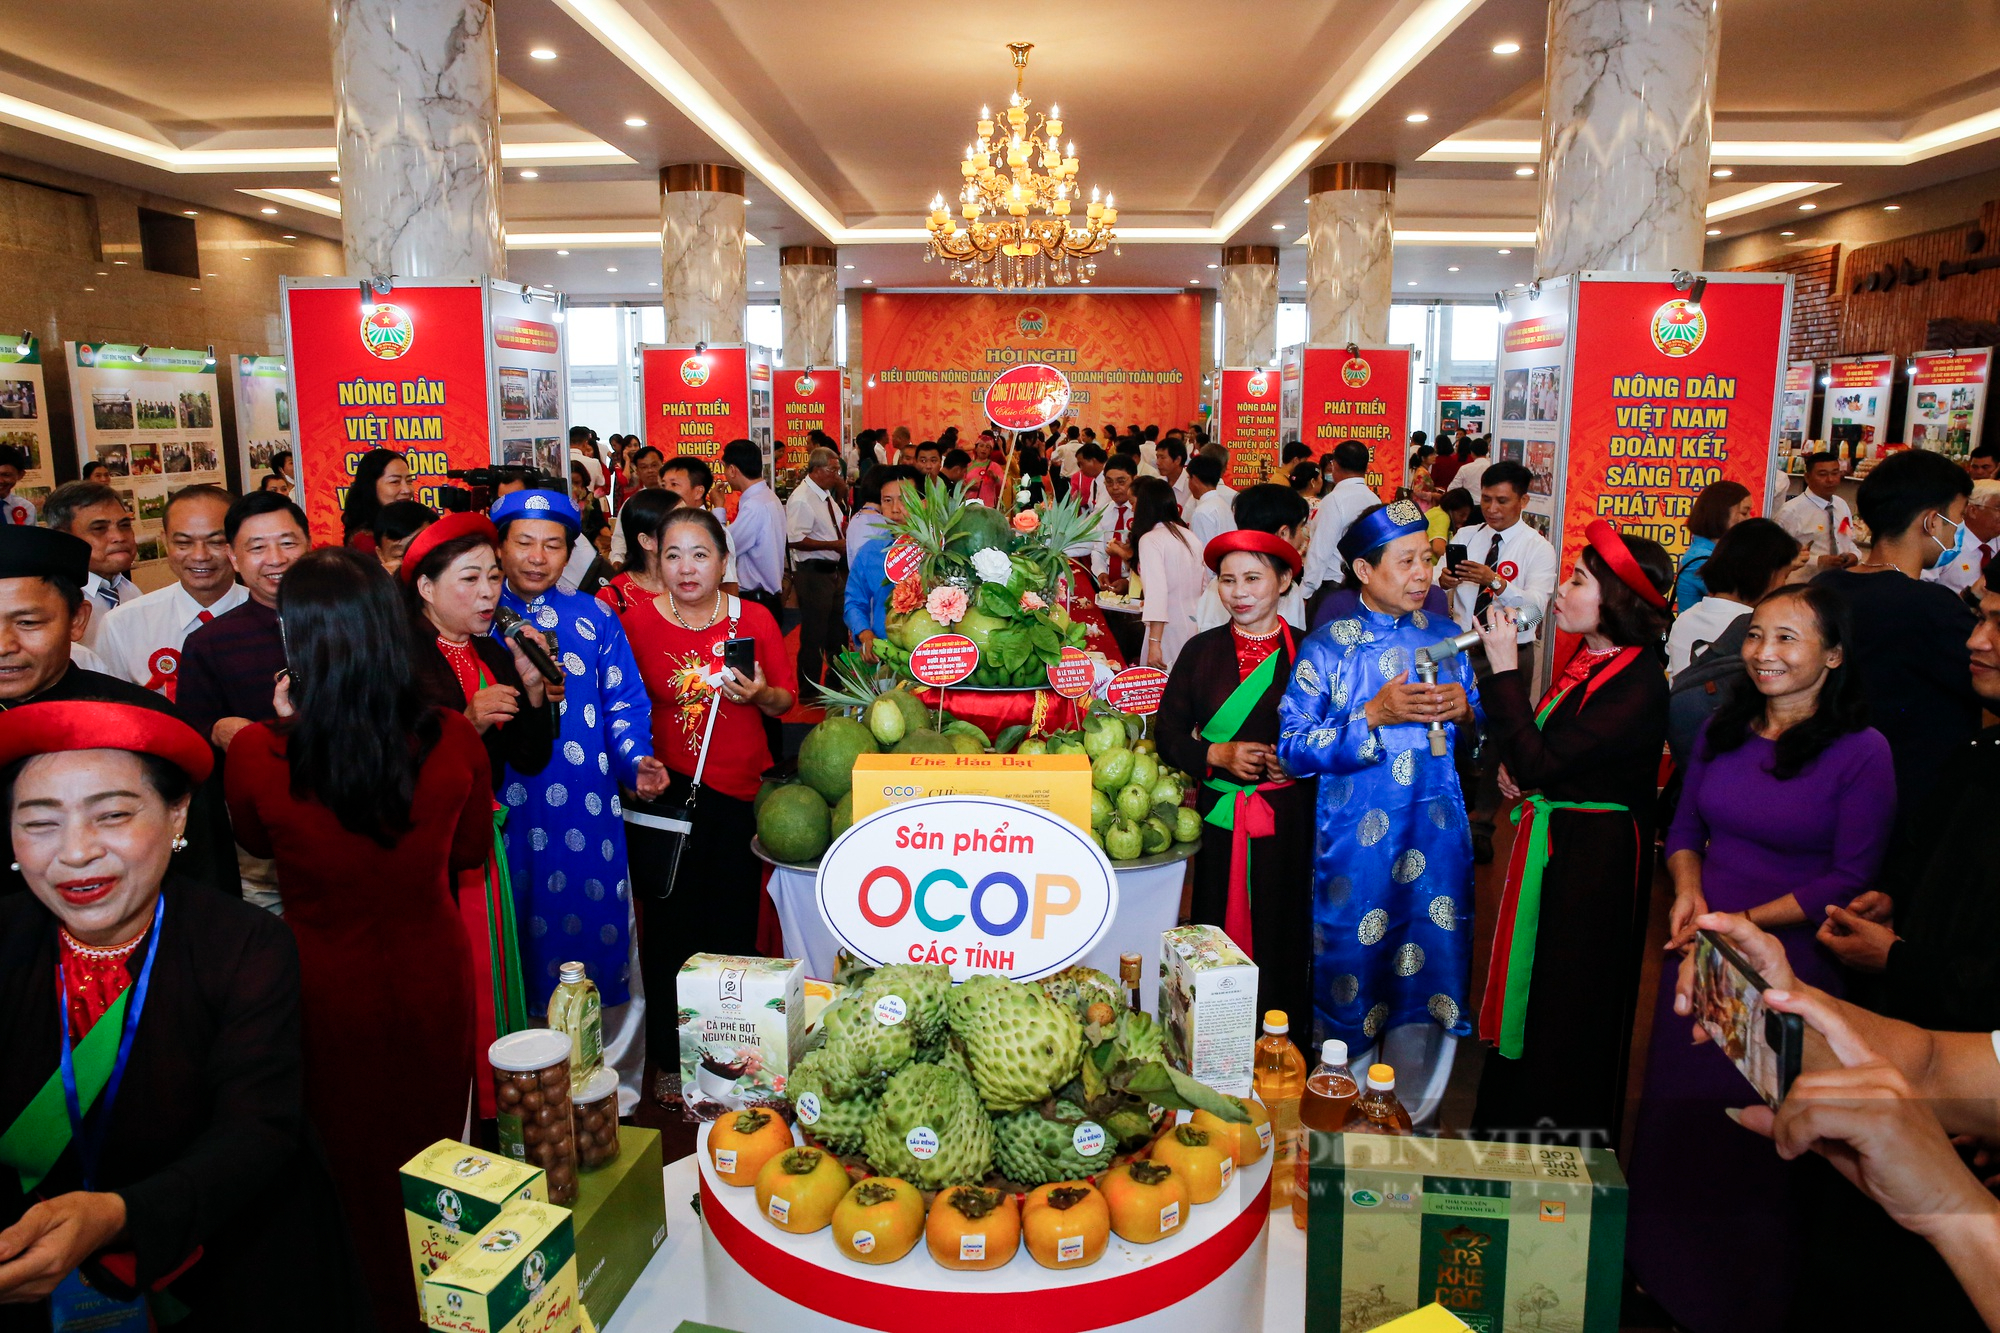 Hàng loạt sản phẩm OCOP, trái cây, nông sản đặc biệt xuất hiện tại Hà Nội - Ảnh 1.